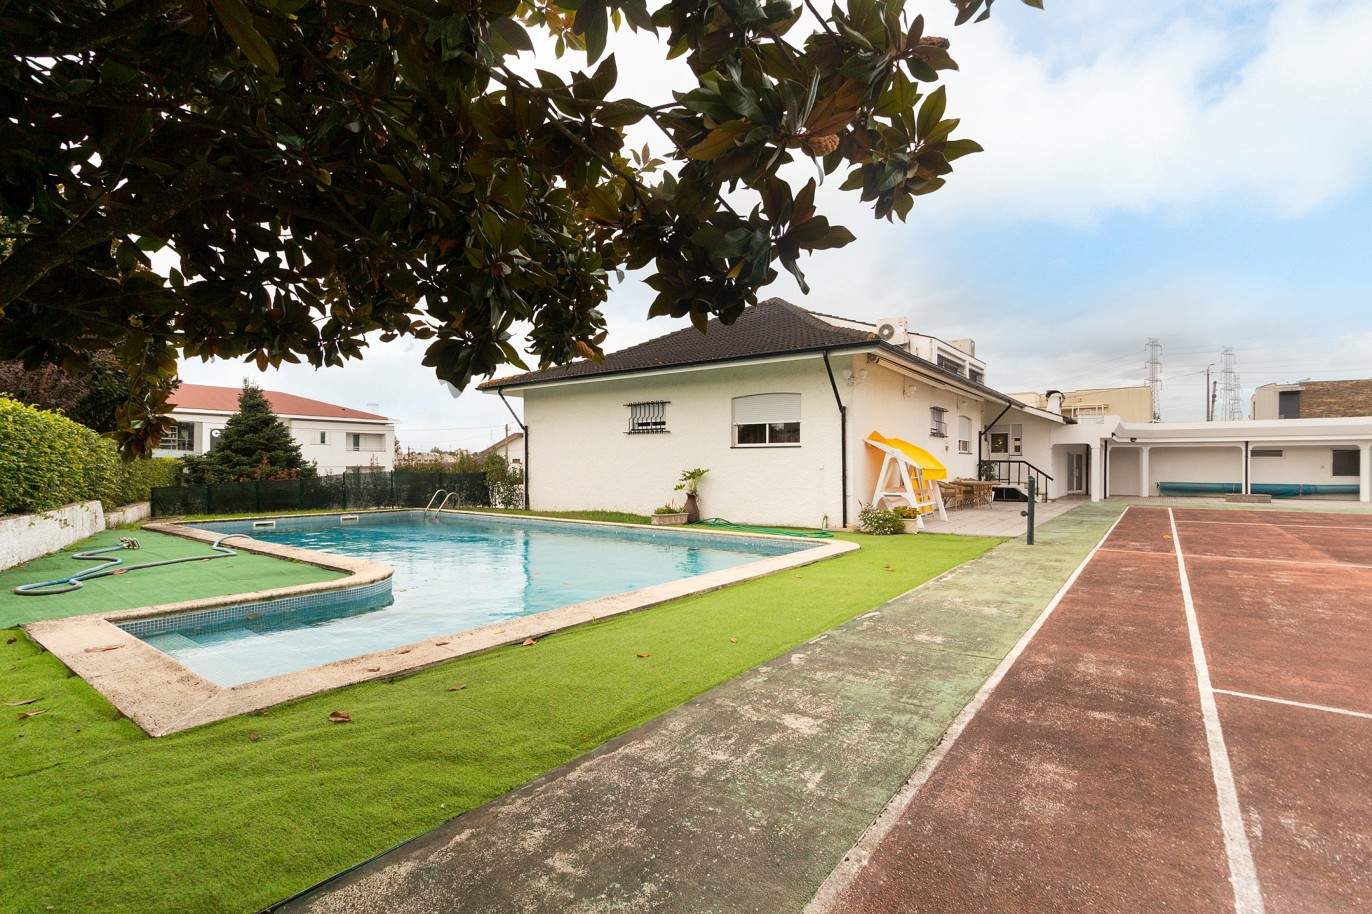 Villa de 4 dormitorios con piscina, pista de tenis y jardín, en venta, en Maia, Oporto, Portugal_210608